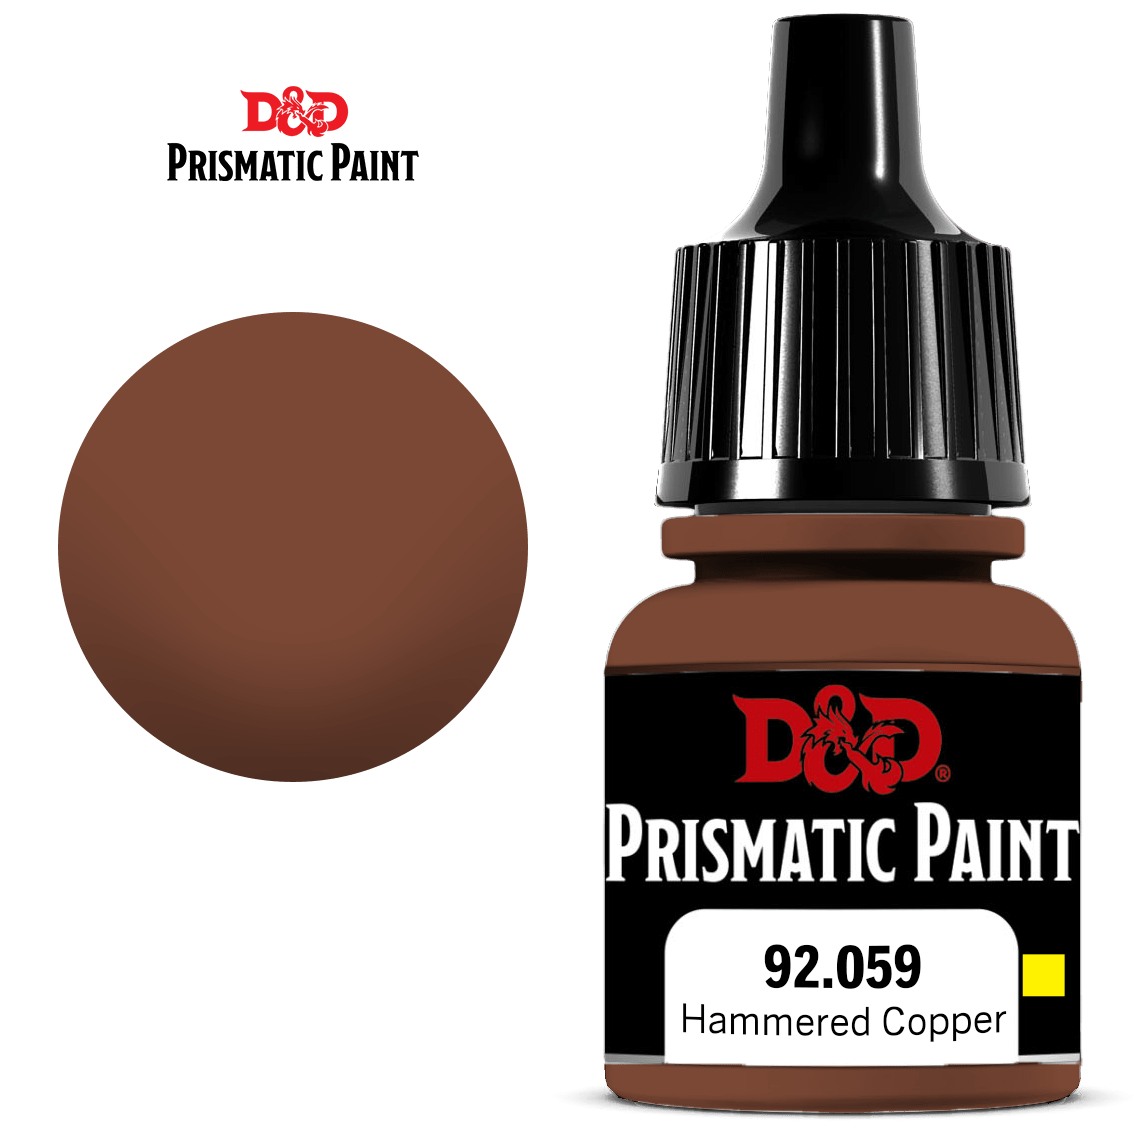 D&D Prismatic Paint: Hammered Copper